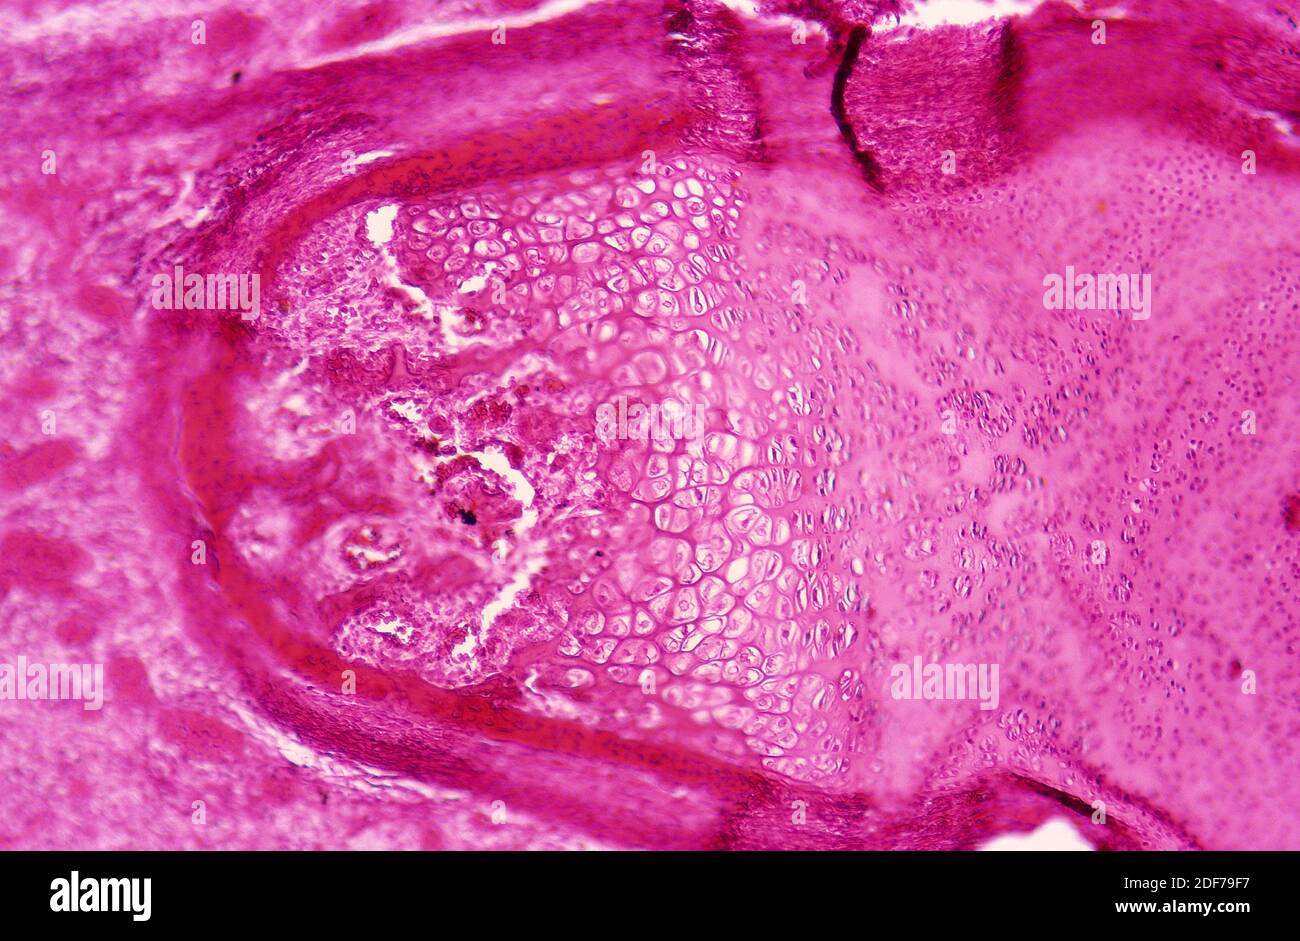 Cartilagine nel dito fetale. Fotomicrografia. Foto Stock